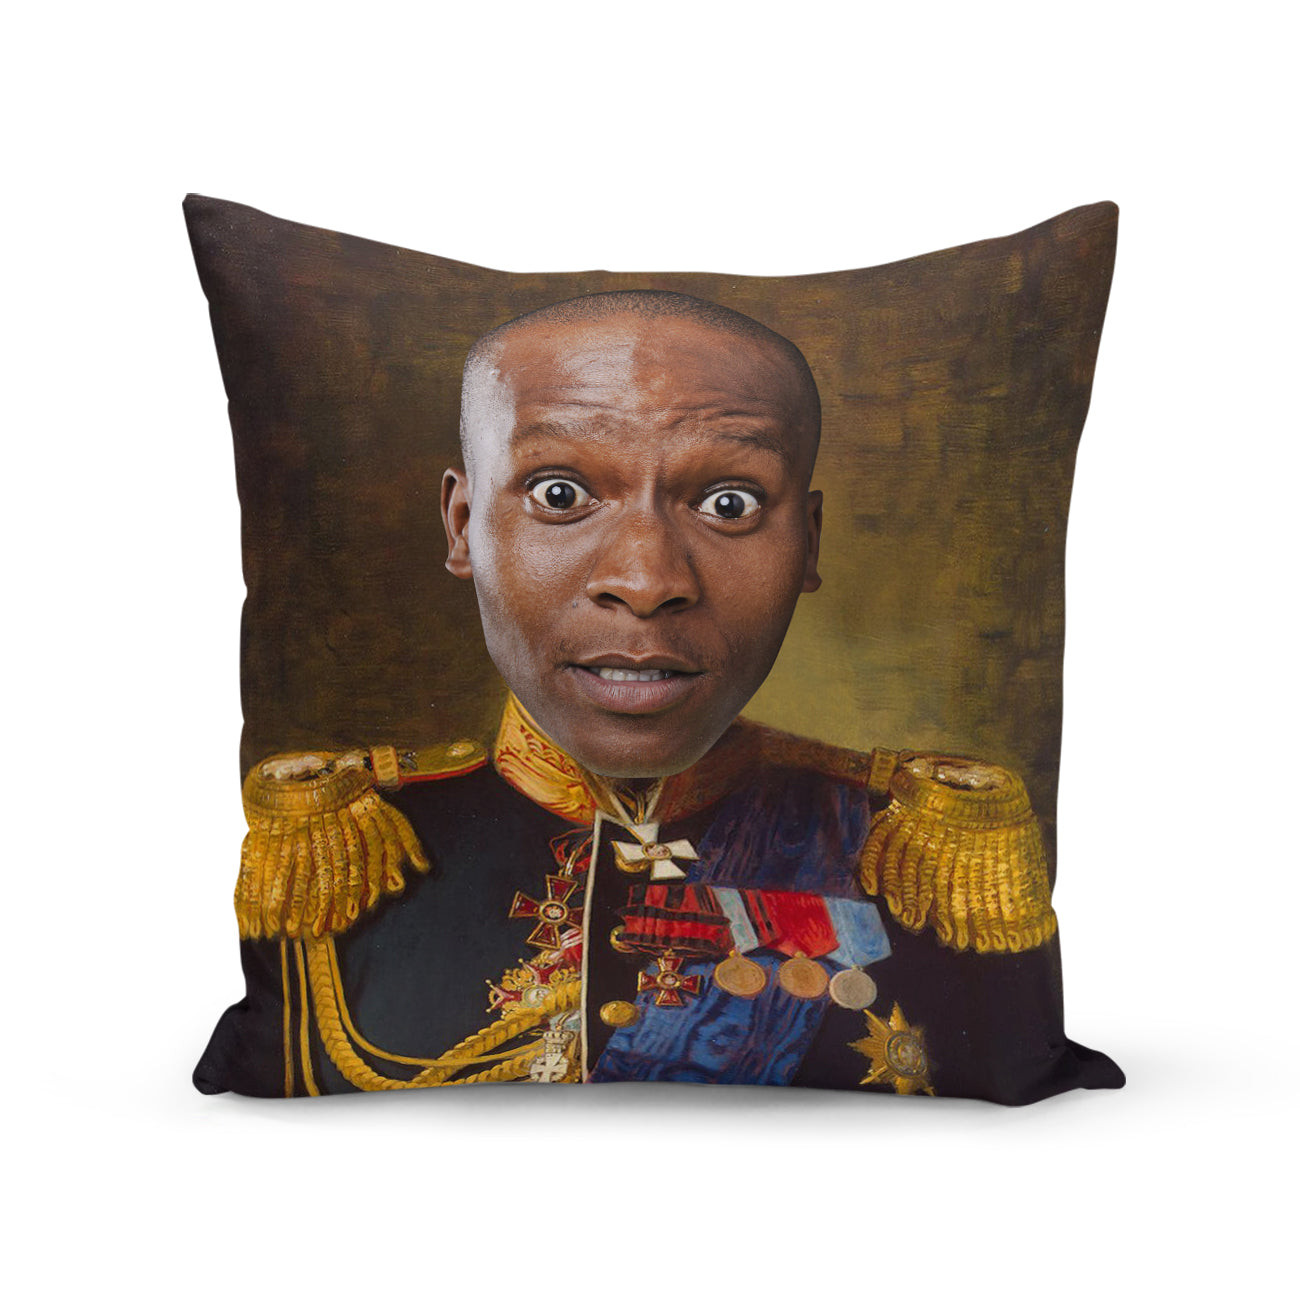 The Admiral Cushion